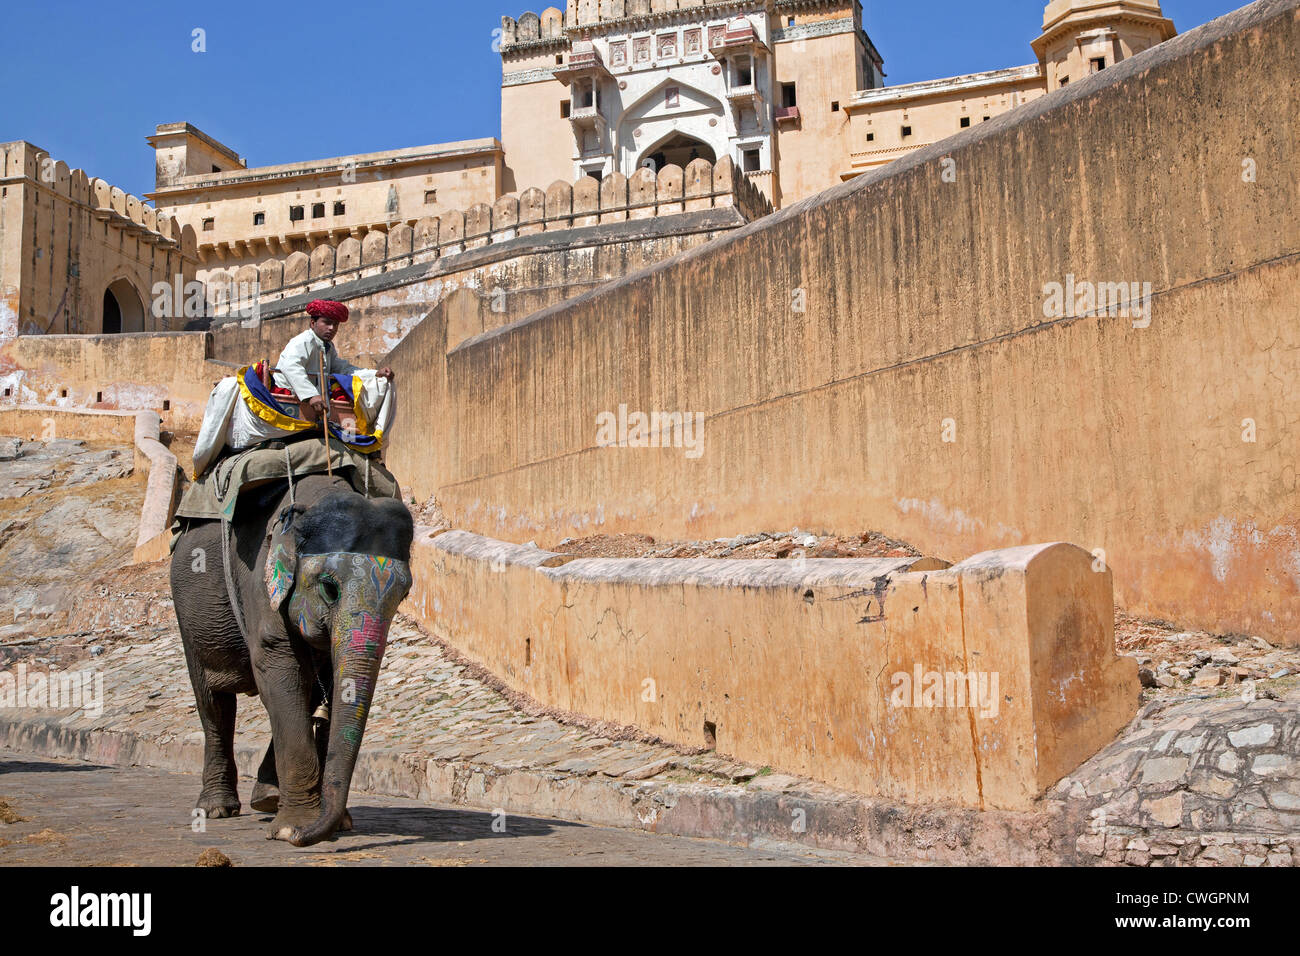 Mahout équitation décorées à l'éléphant indien Fort Amer / Fort d'Amber, palais en grès rouge à Amer près de Jaipur, Rajasthan, Inde Banque D'Images